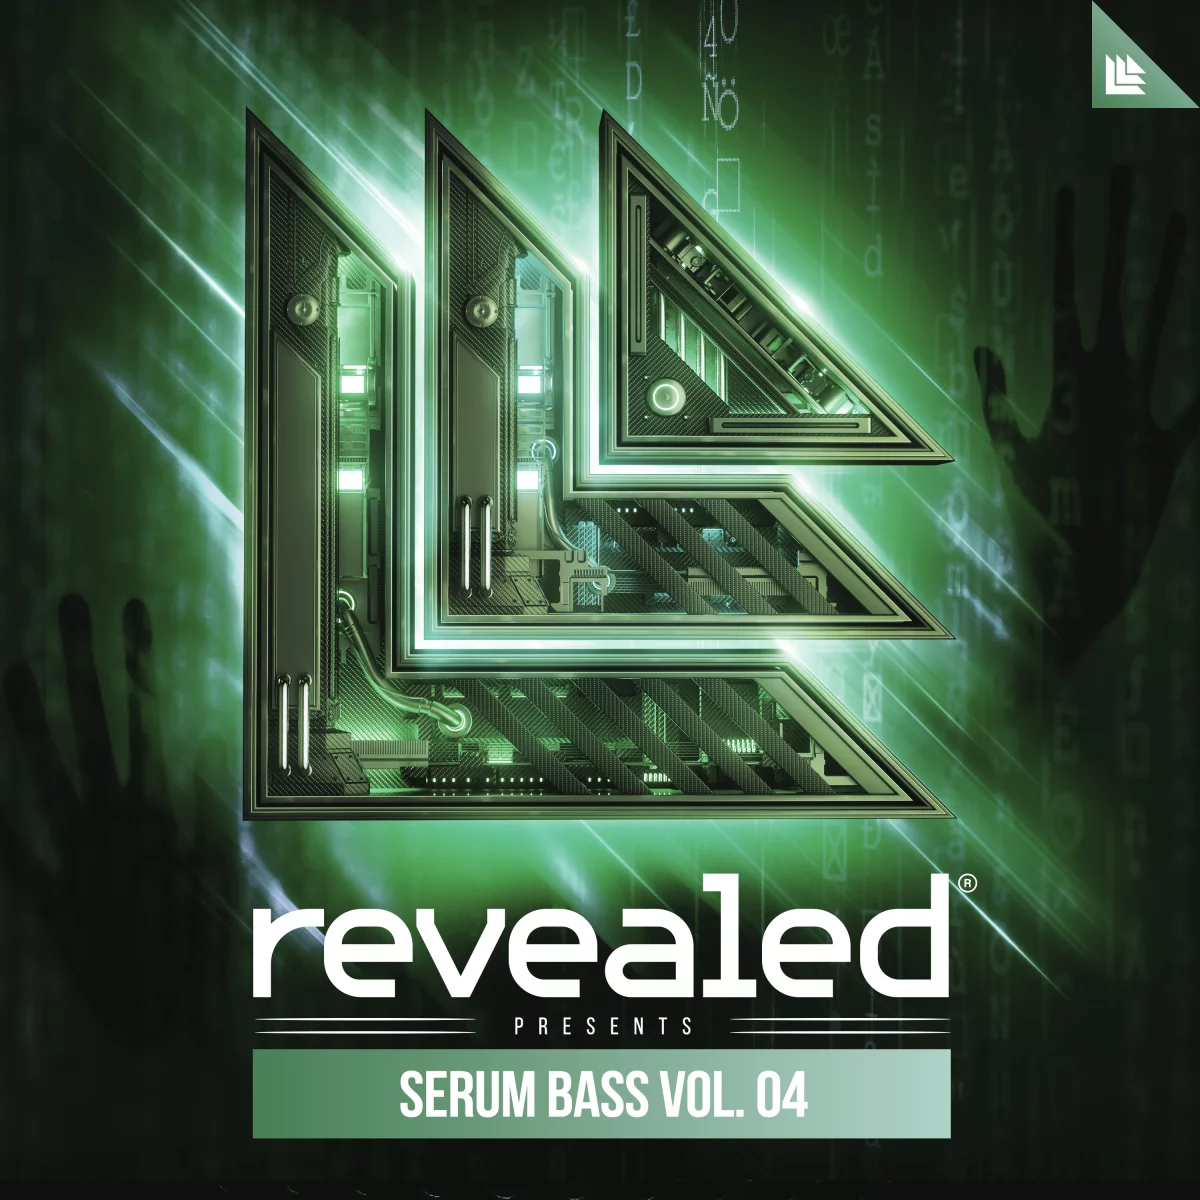 Revealed Serum Bass Vol. 4 - revealedrec⁠ 